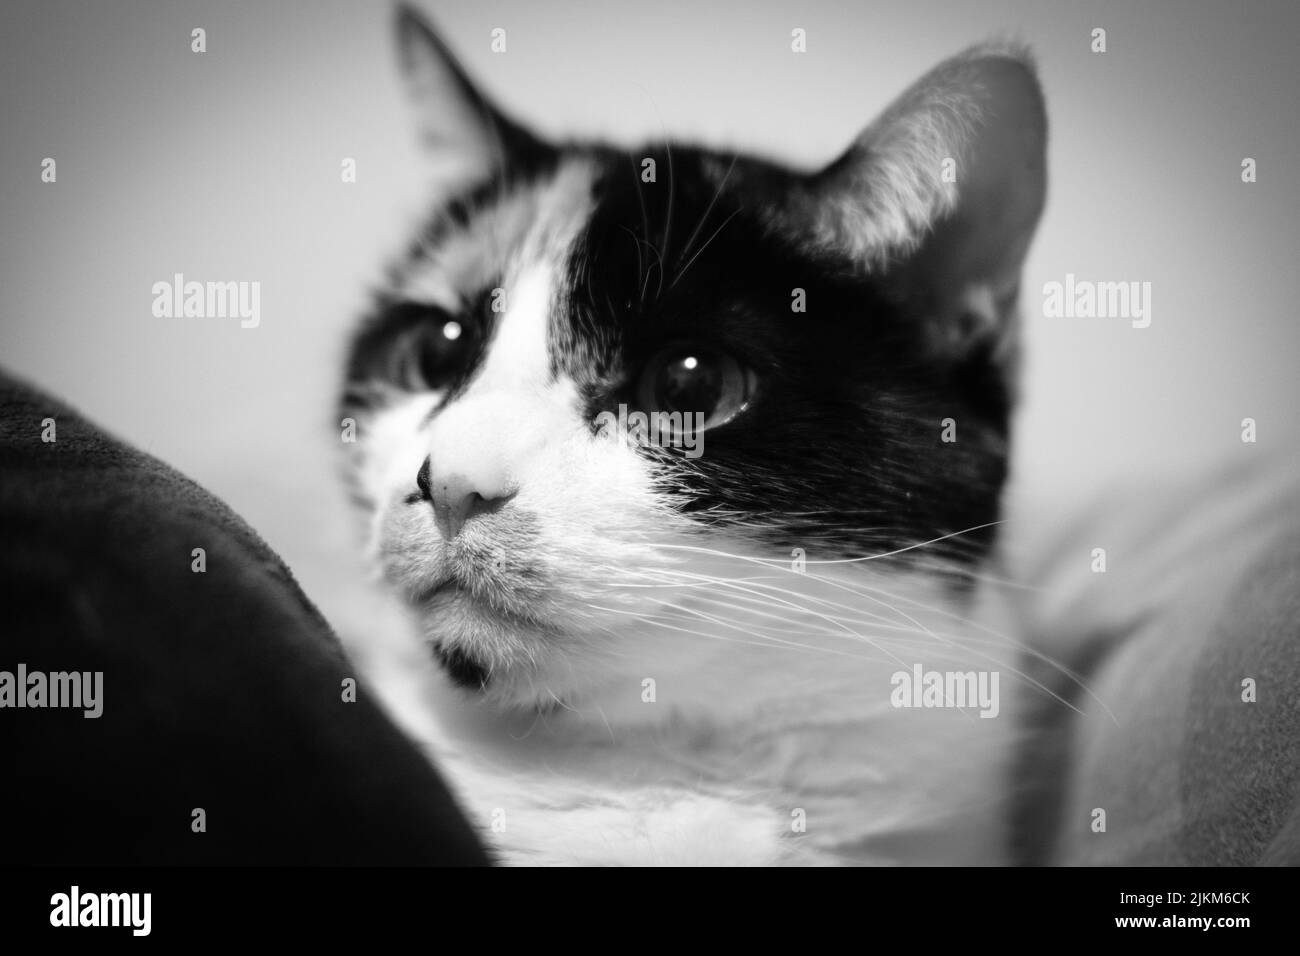 Un ritratto in scala di grigi di un adorabile gatto tricolore con uno sguardo astuto Foto Stock